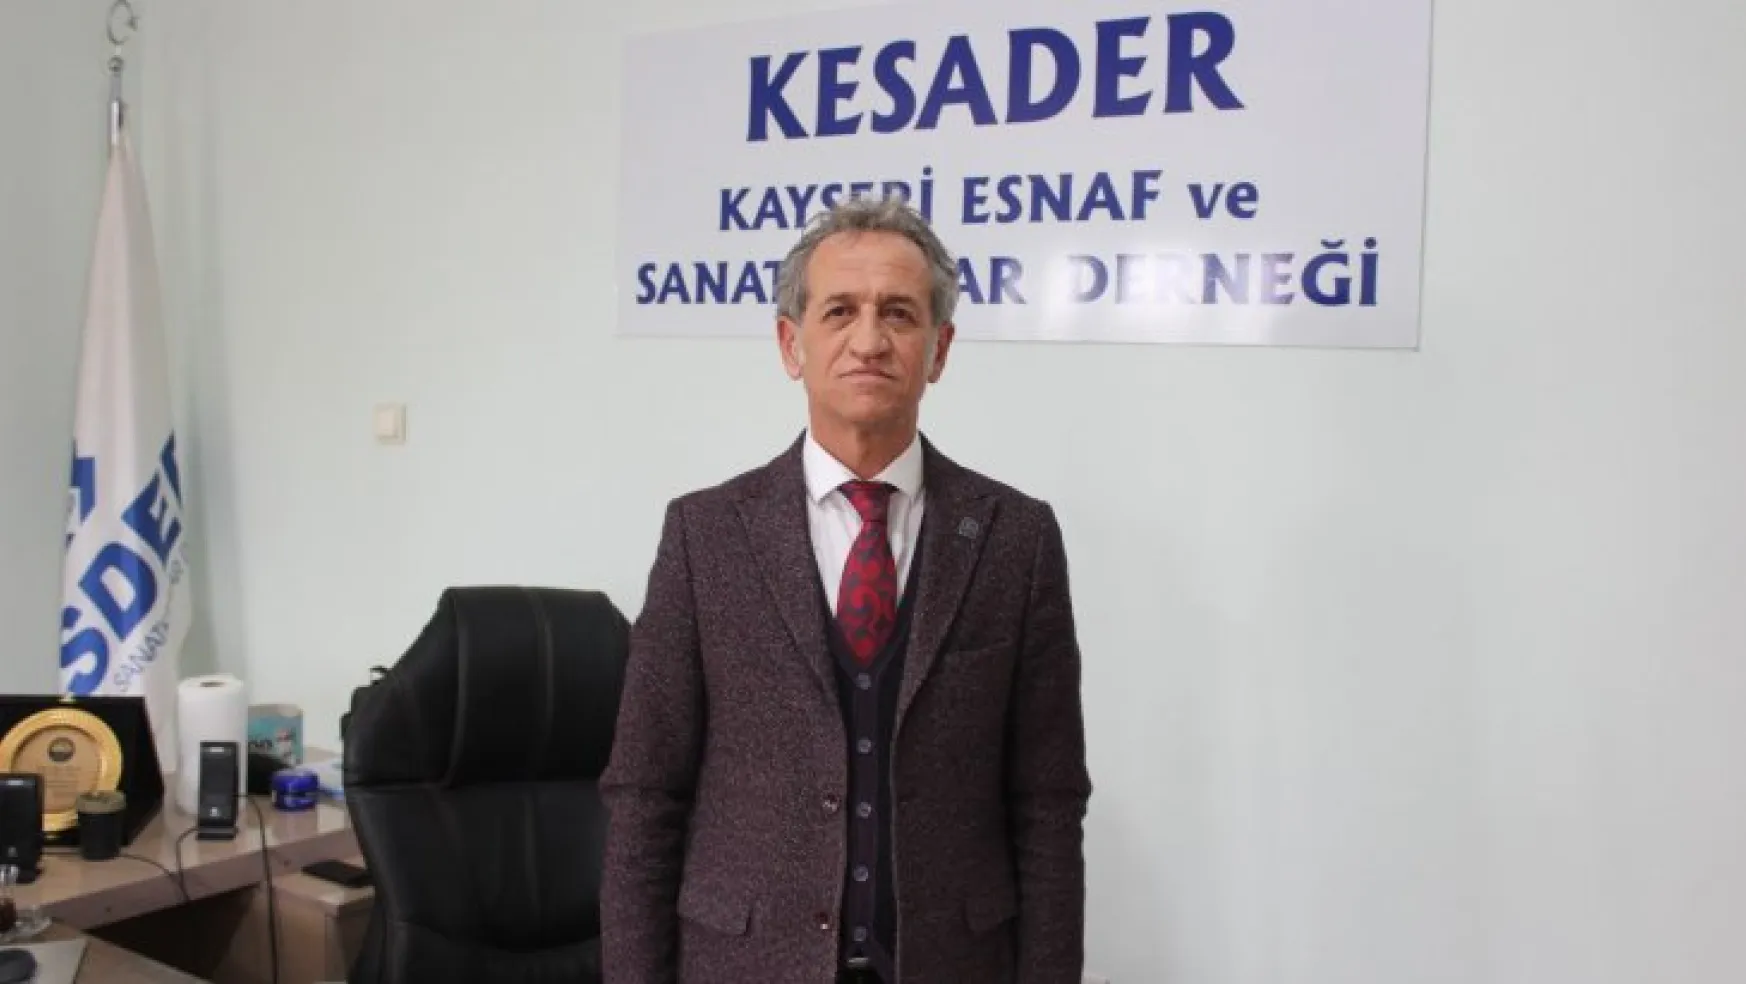 KESADER Başkanı Erçalık: 'Esnaf borcunu döndüremiyor, hacizlerle uğraşıyor'